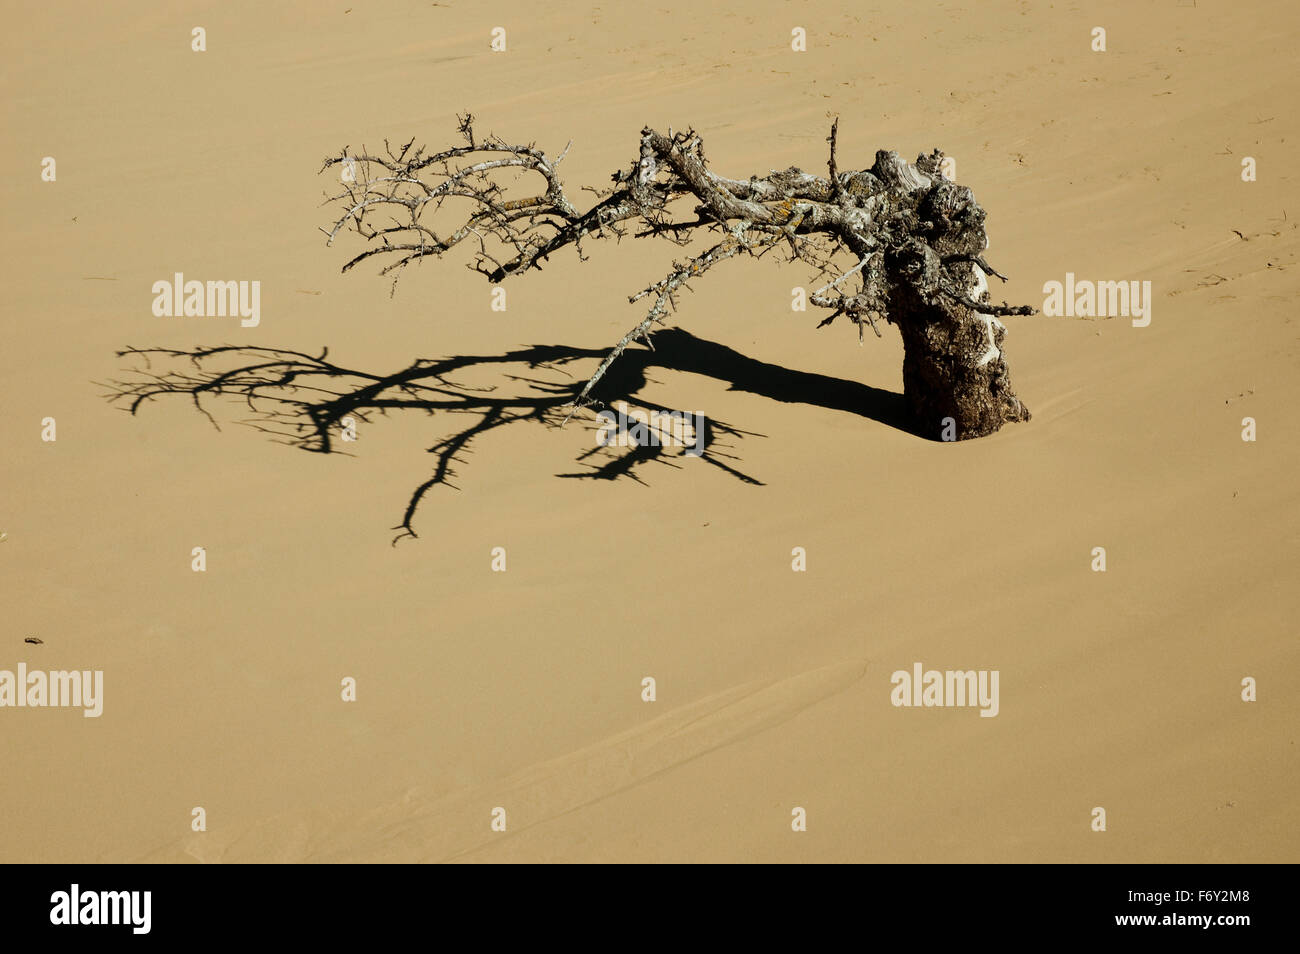 Tronc séché et shadow enterré dans les dunes de sable naturel, Gomati 2000 zone protégée, Katalako, île de Lemnos, Grèce Banque D'Images